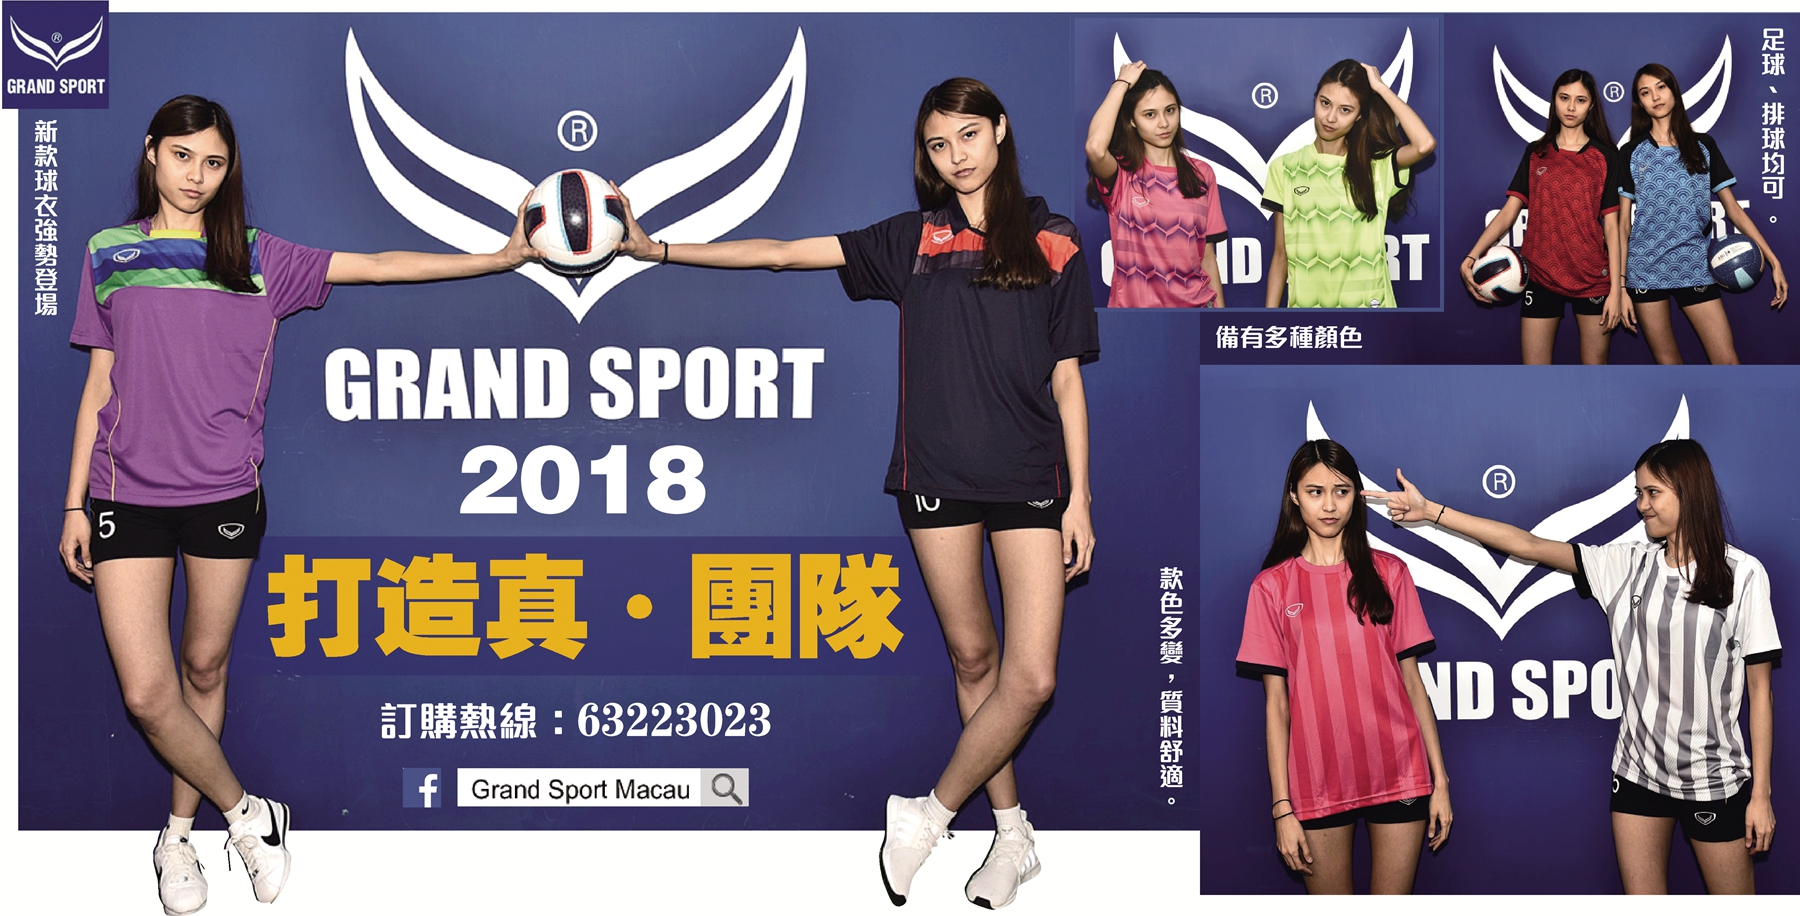 grand sport 2018廣告.jpg